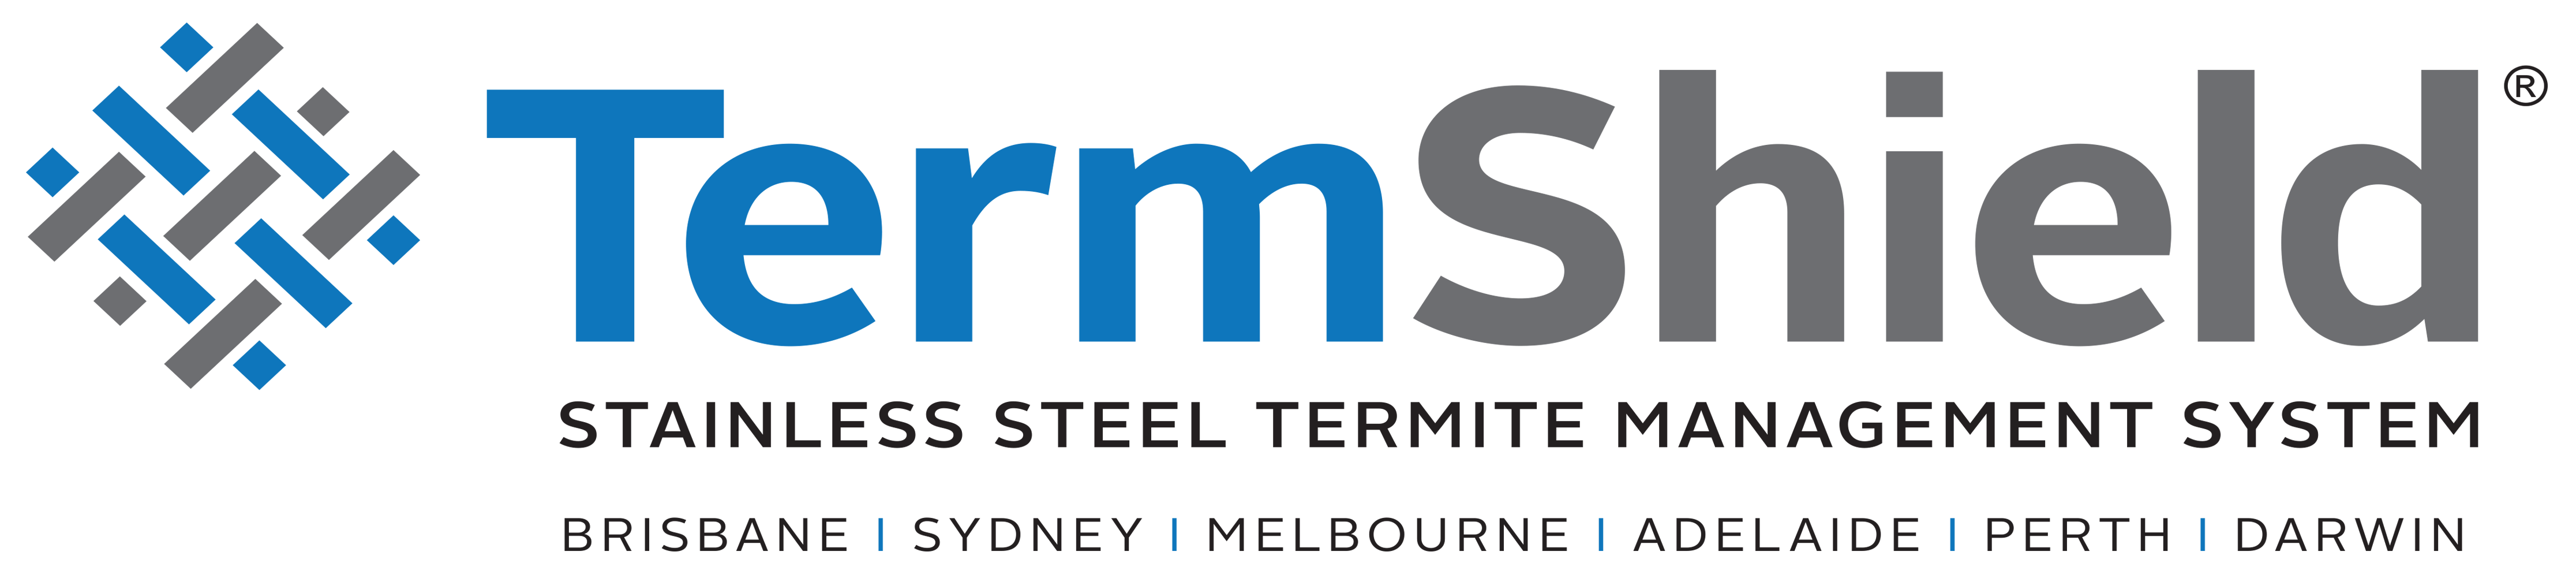 TermShield-Logo-2019-HR.png